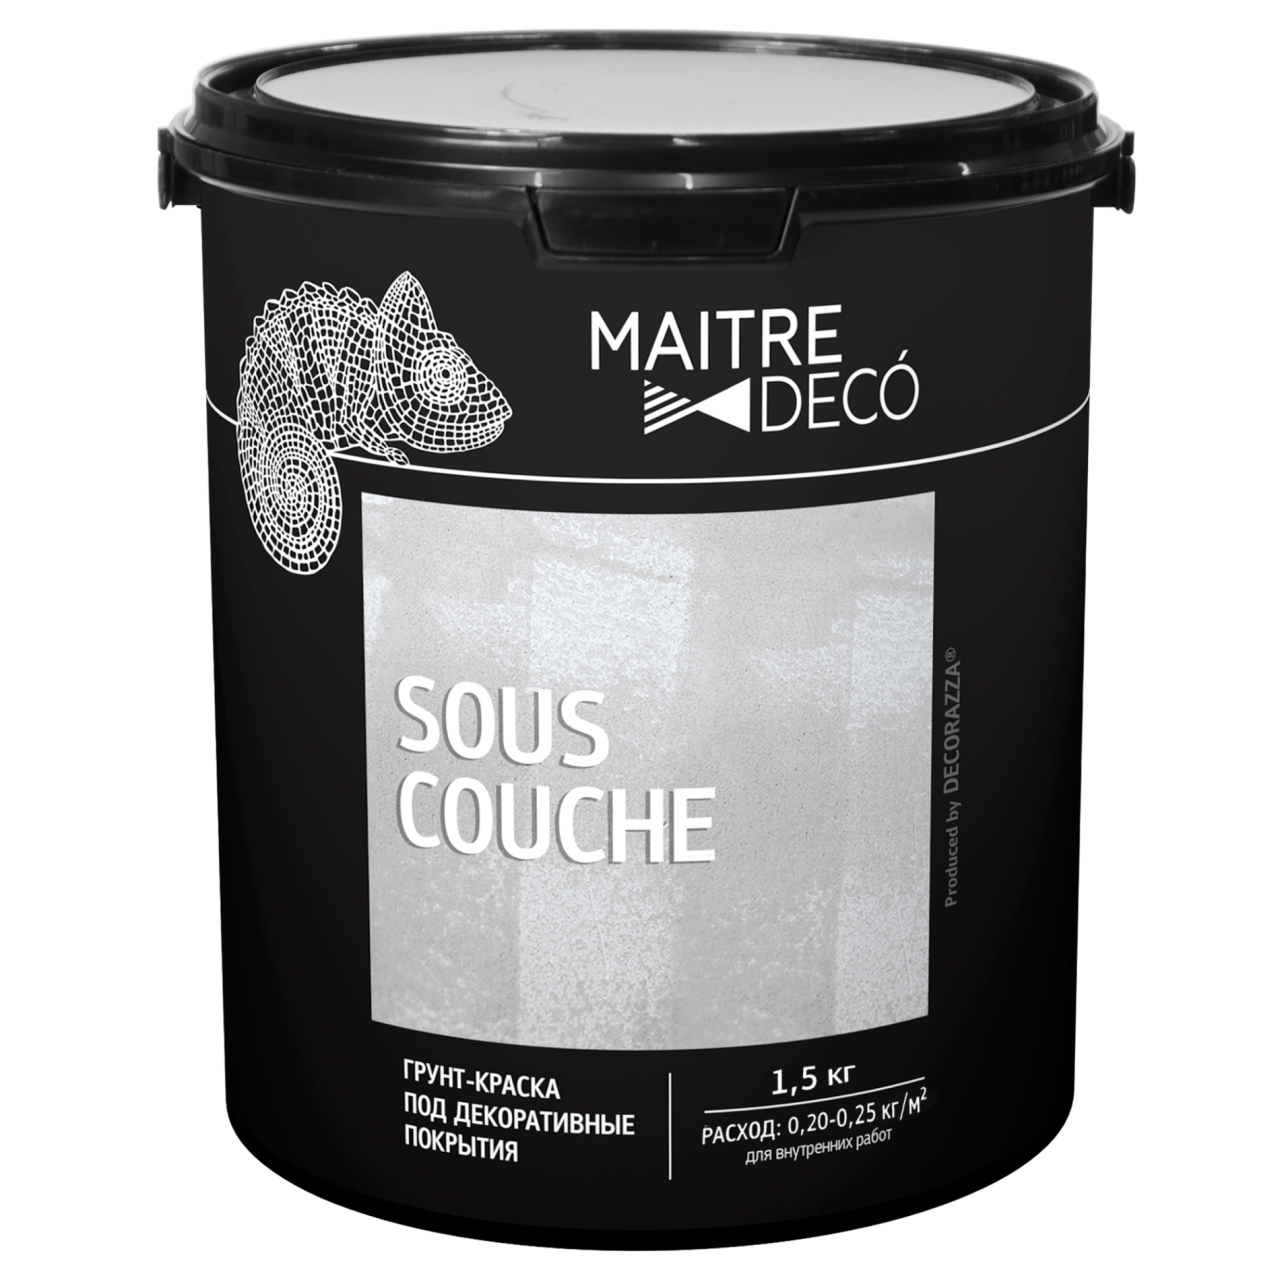 MAITRE DECO® SOUS-COUCHE 1